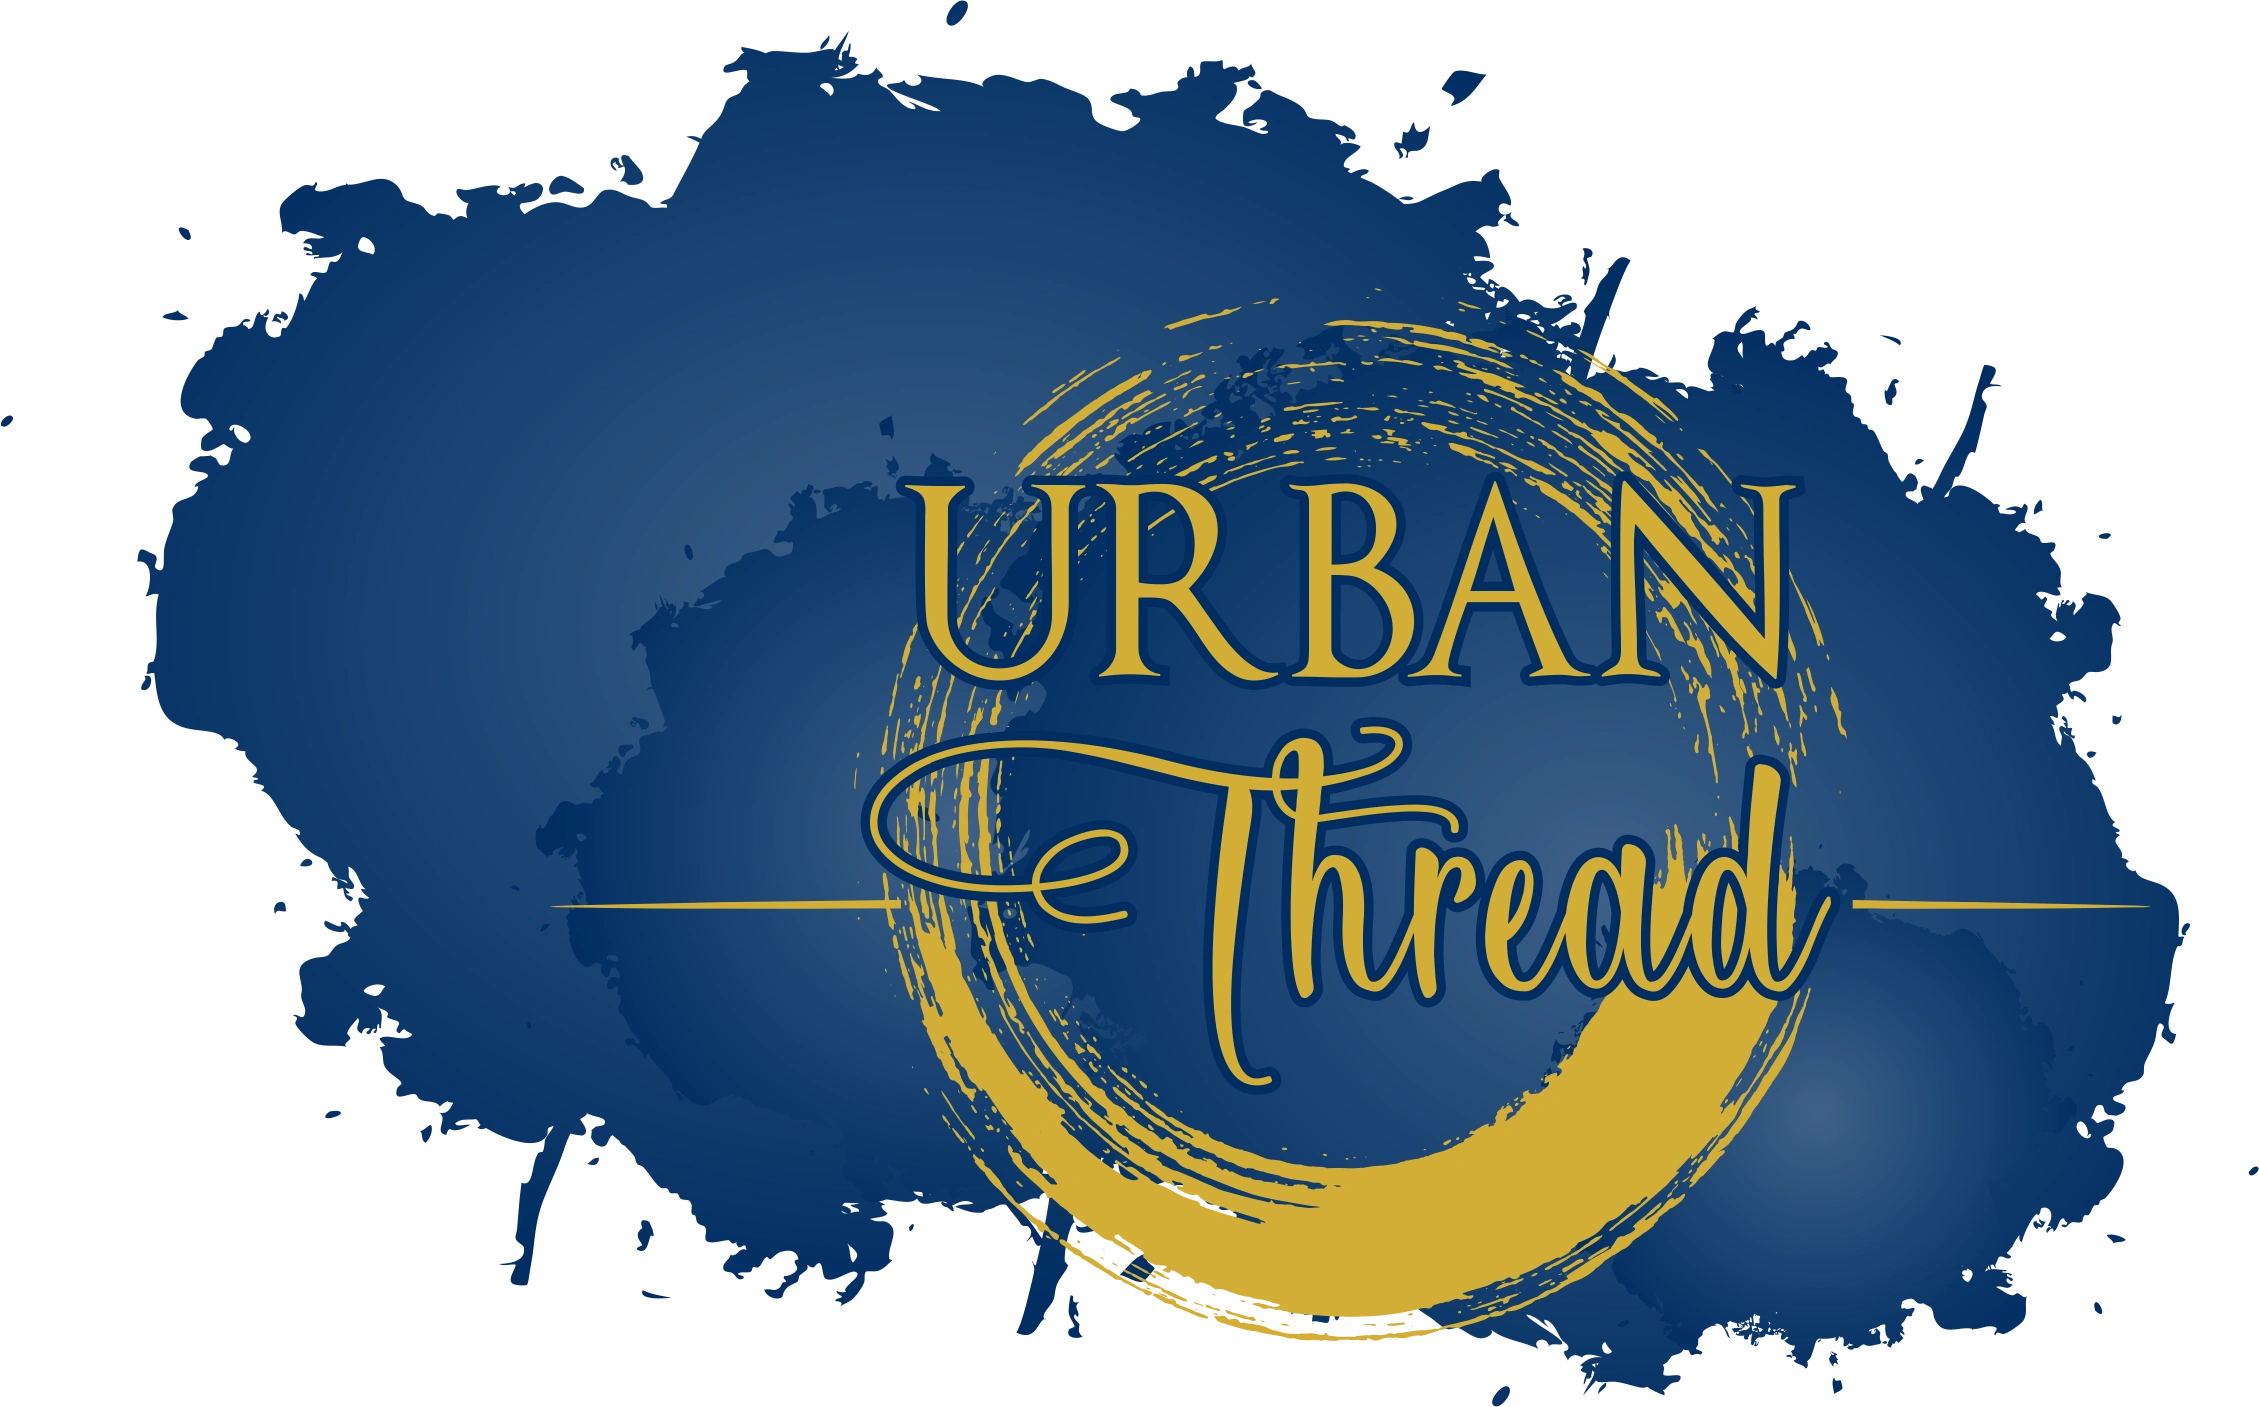 Urban Thread